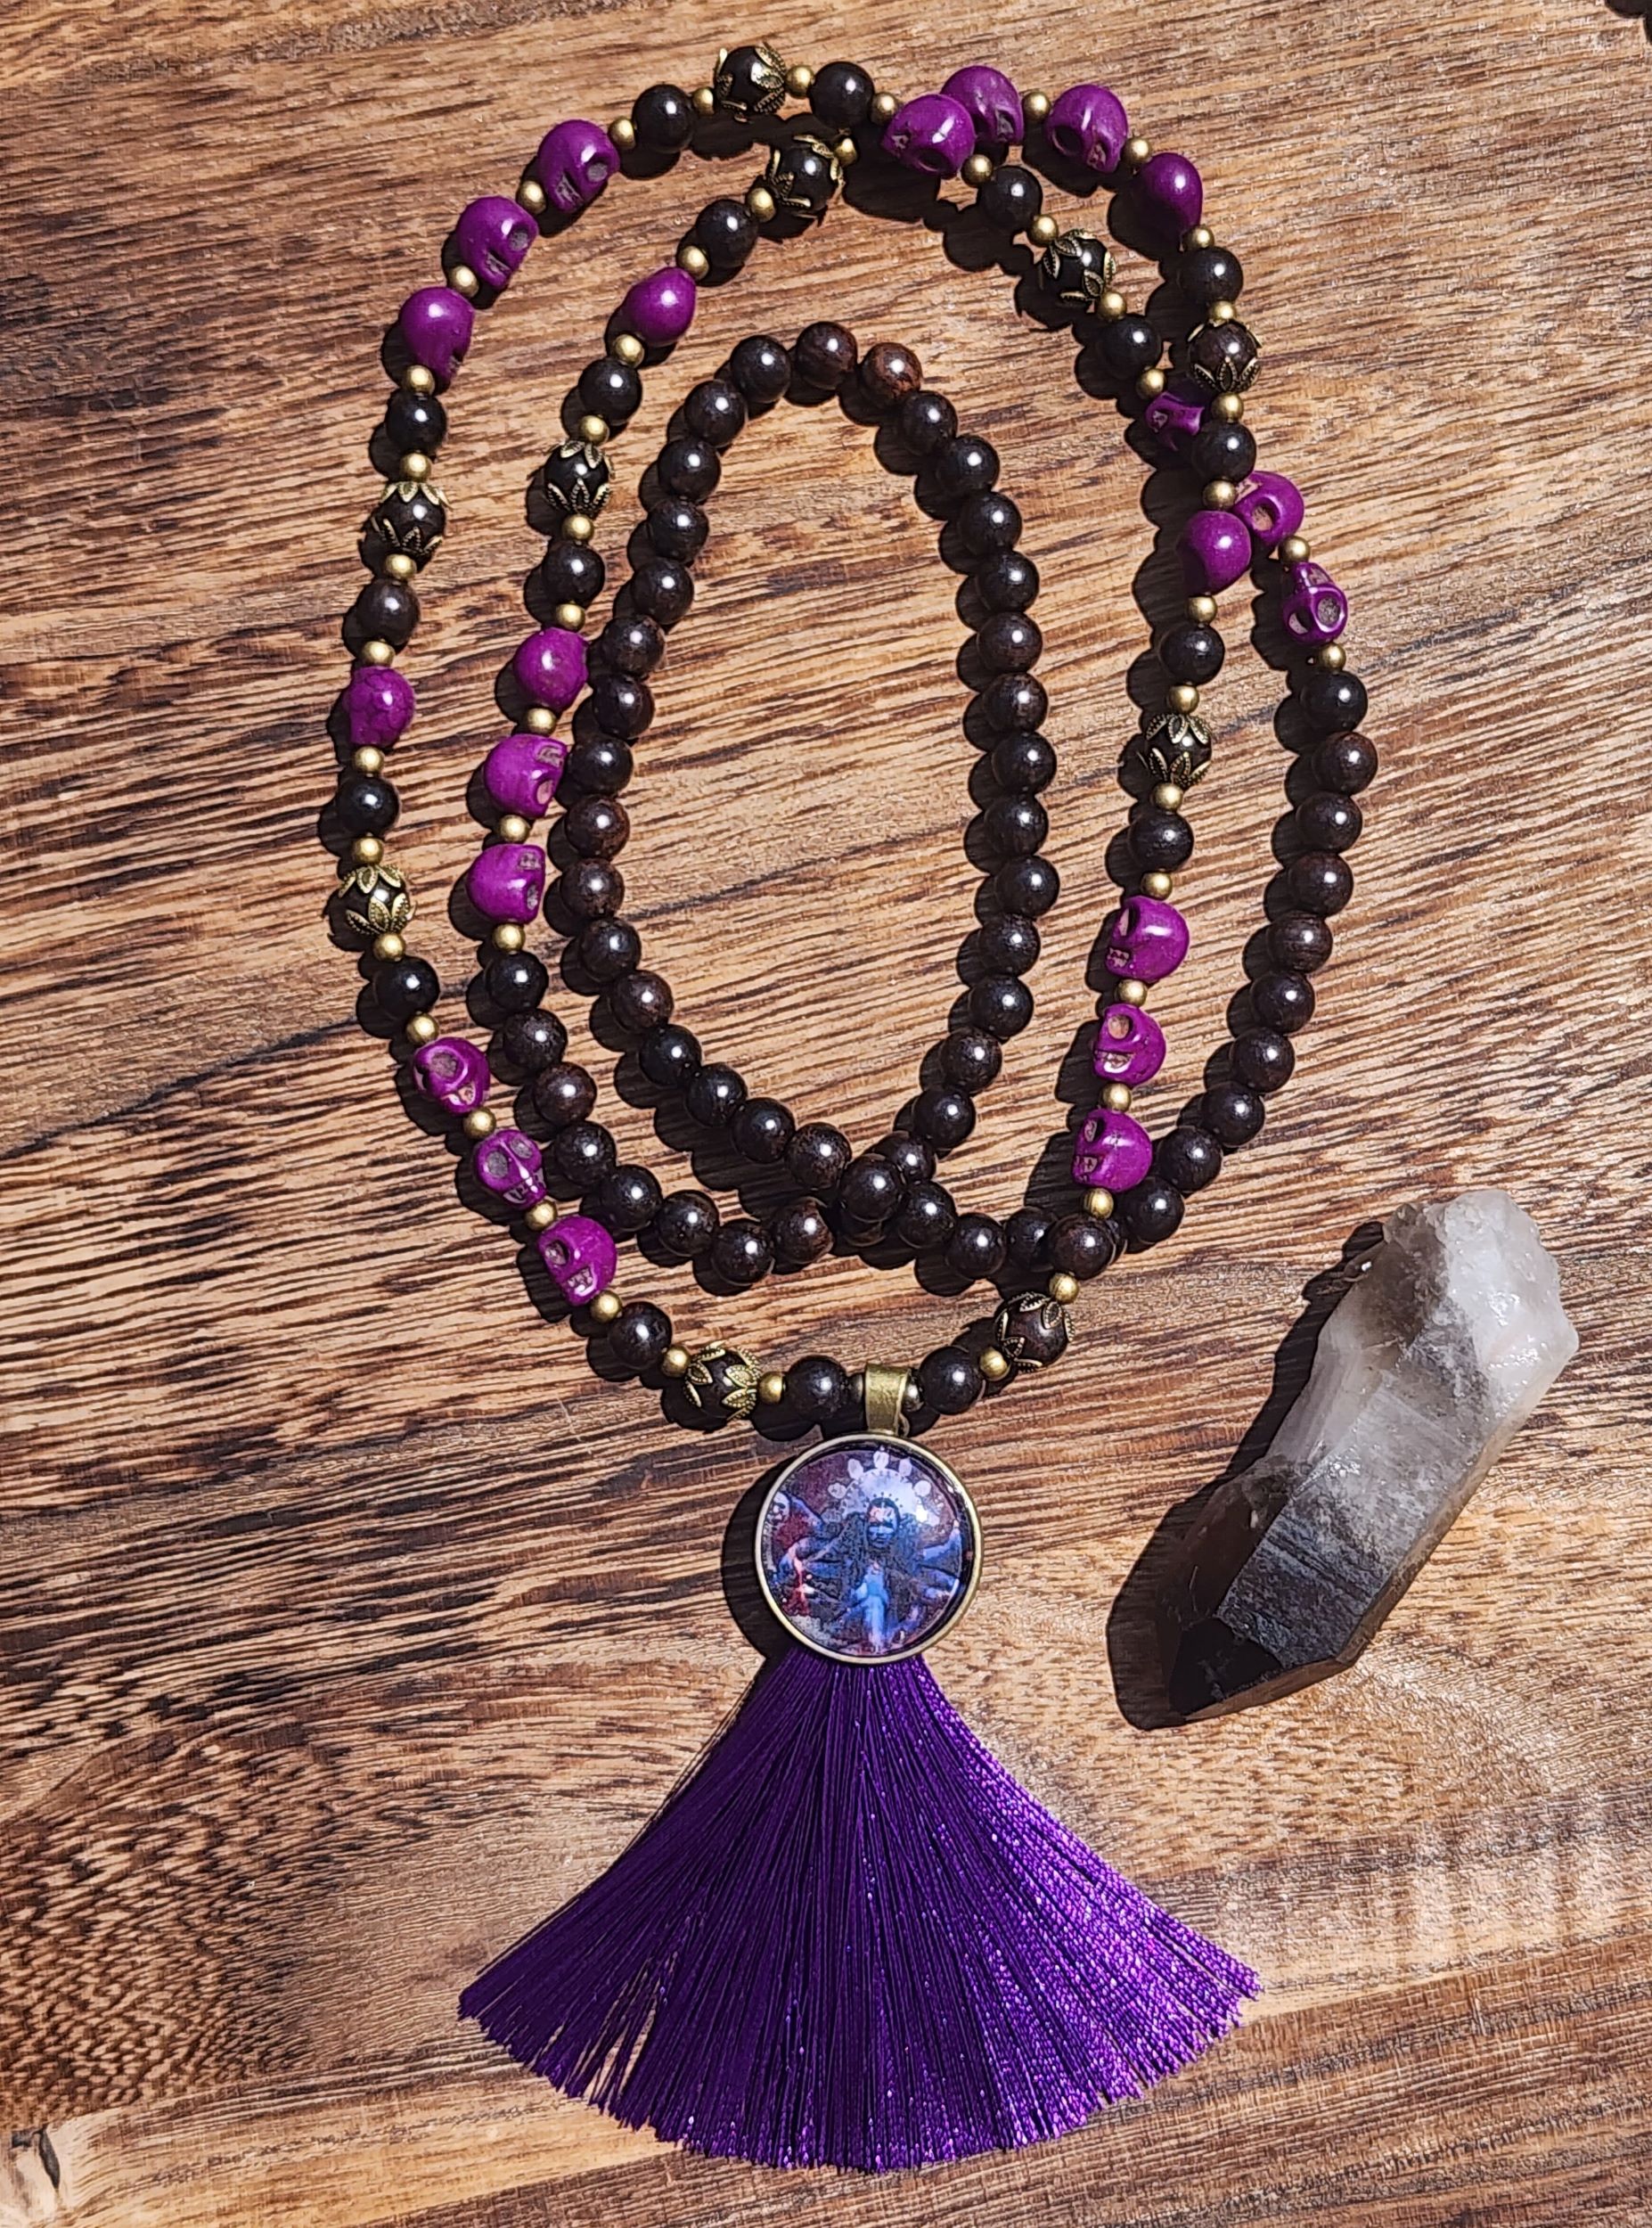 Kali Ma Mala featuring ebony wood, purple skulls, and purple tassel